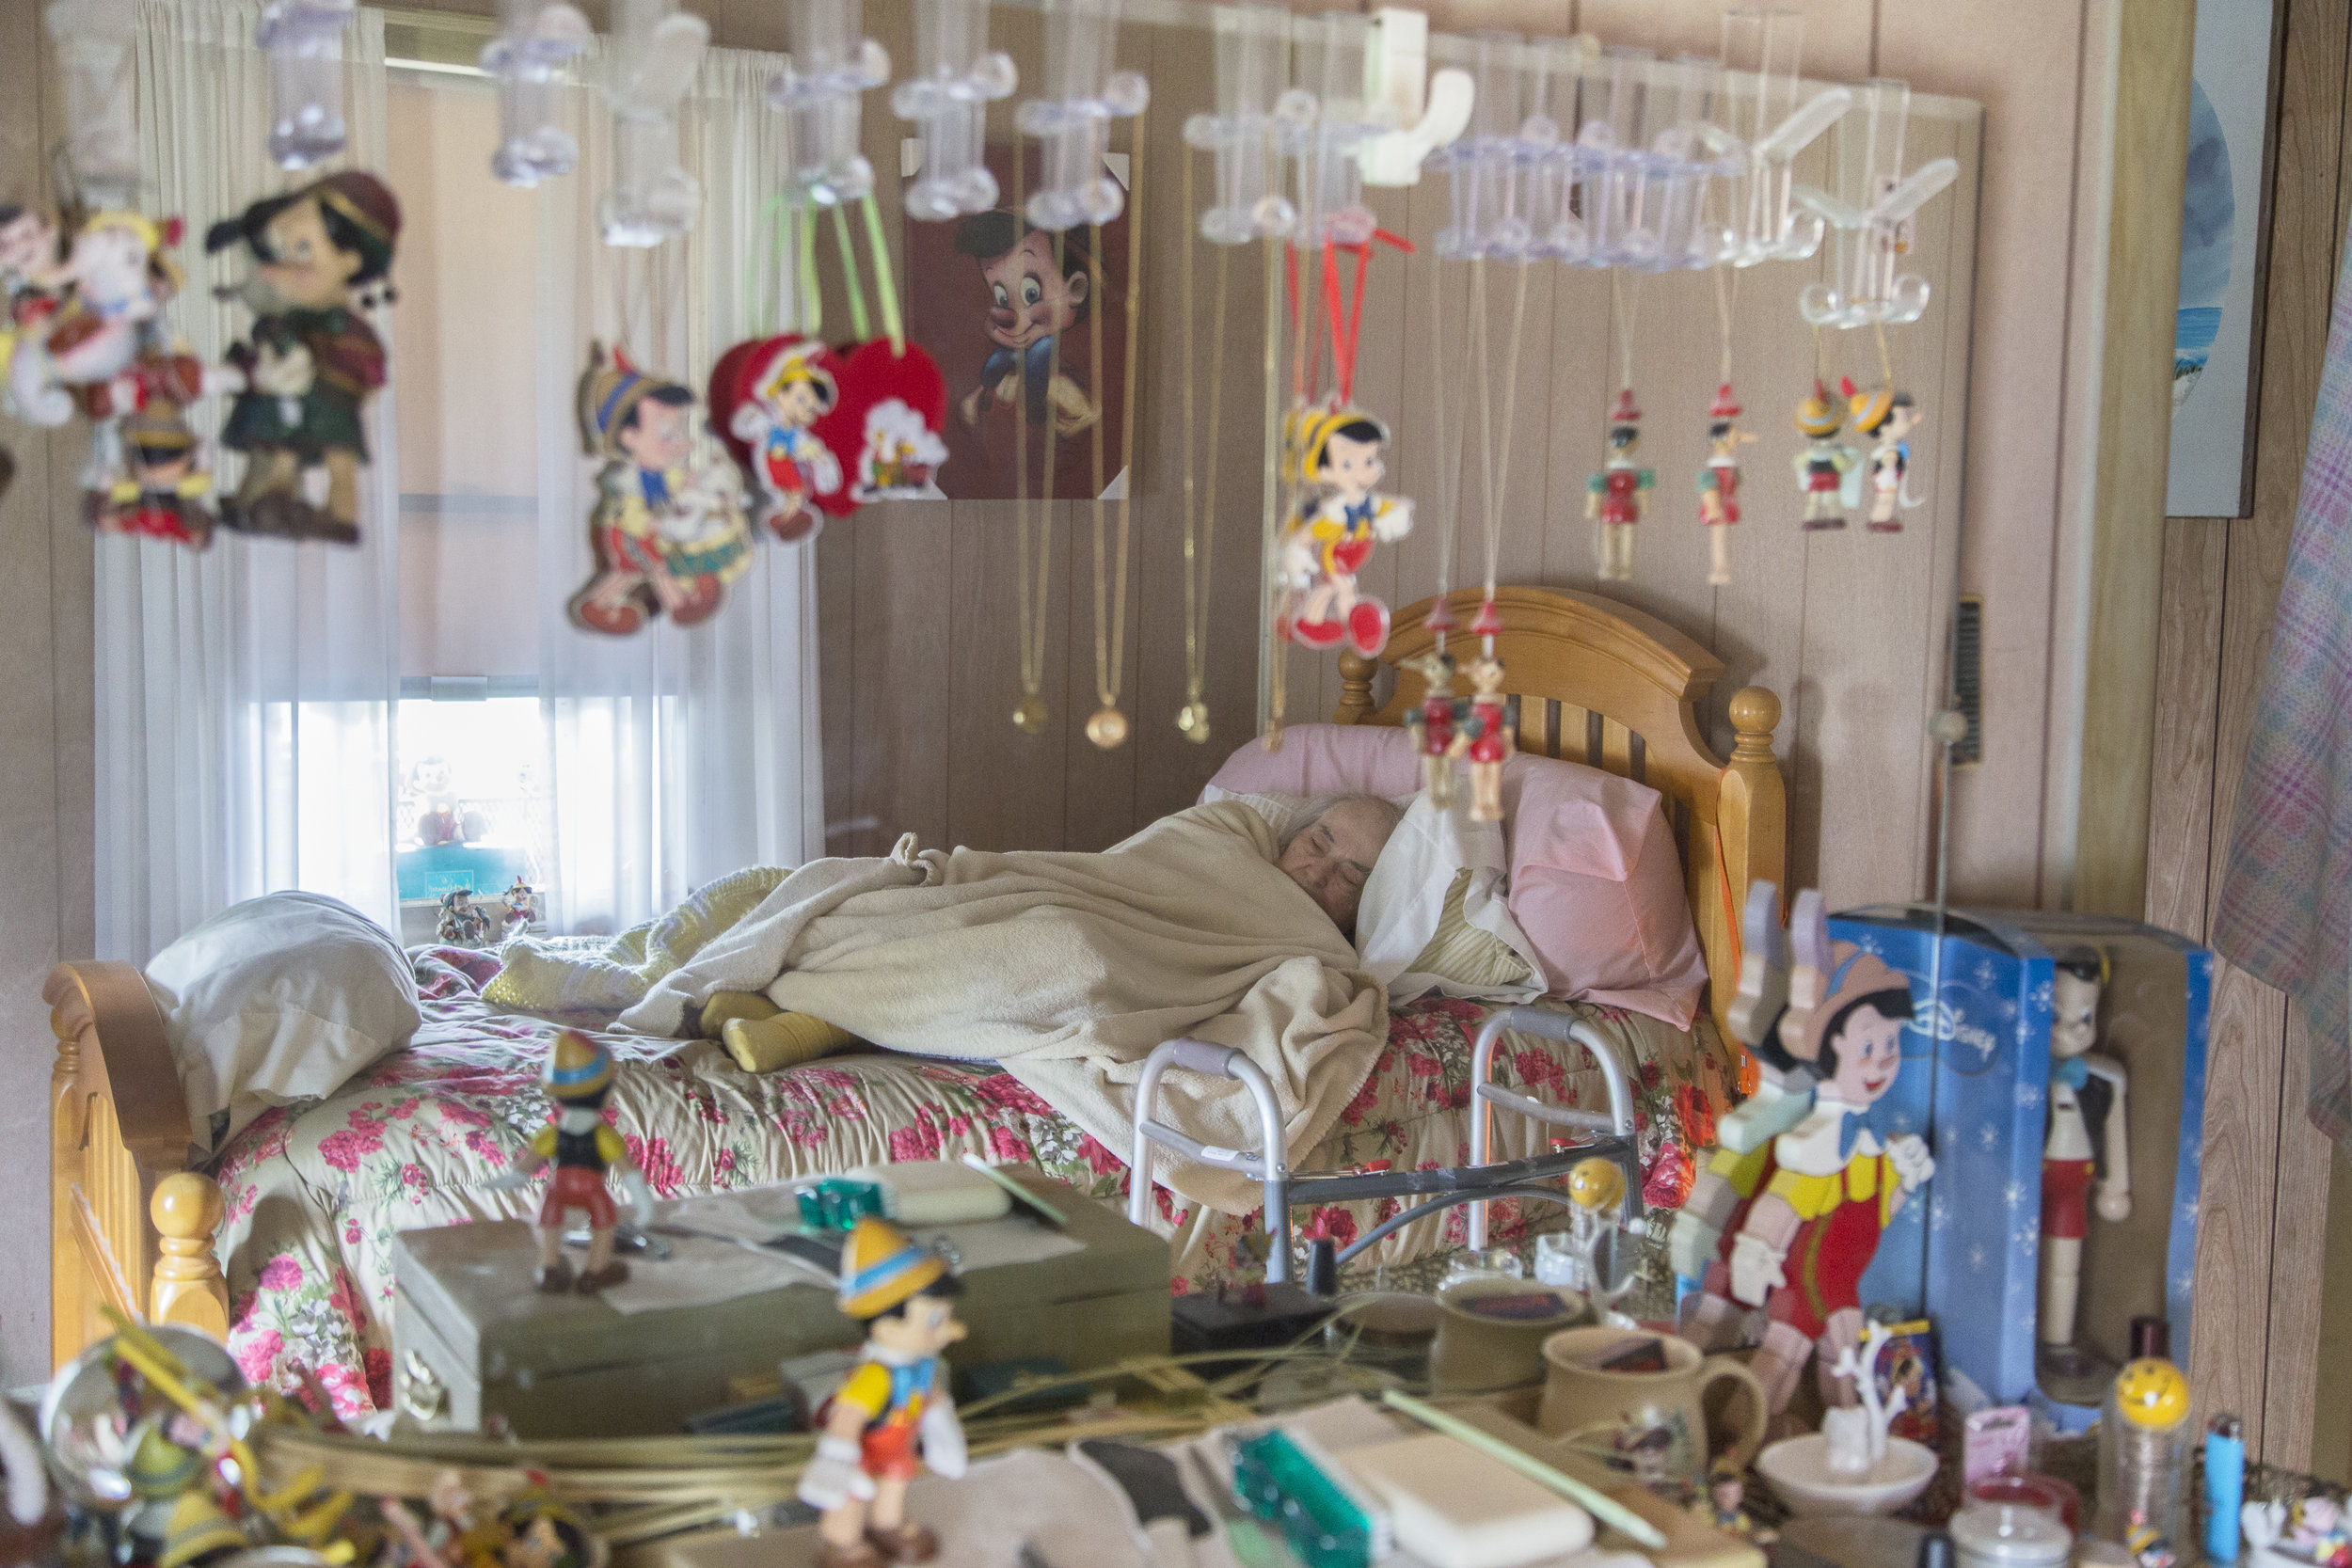 Mother's Bedroom, 2015